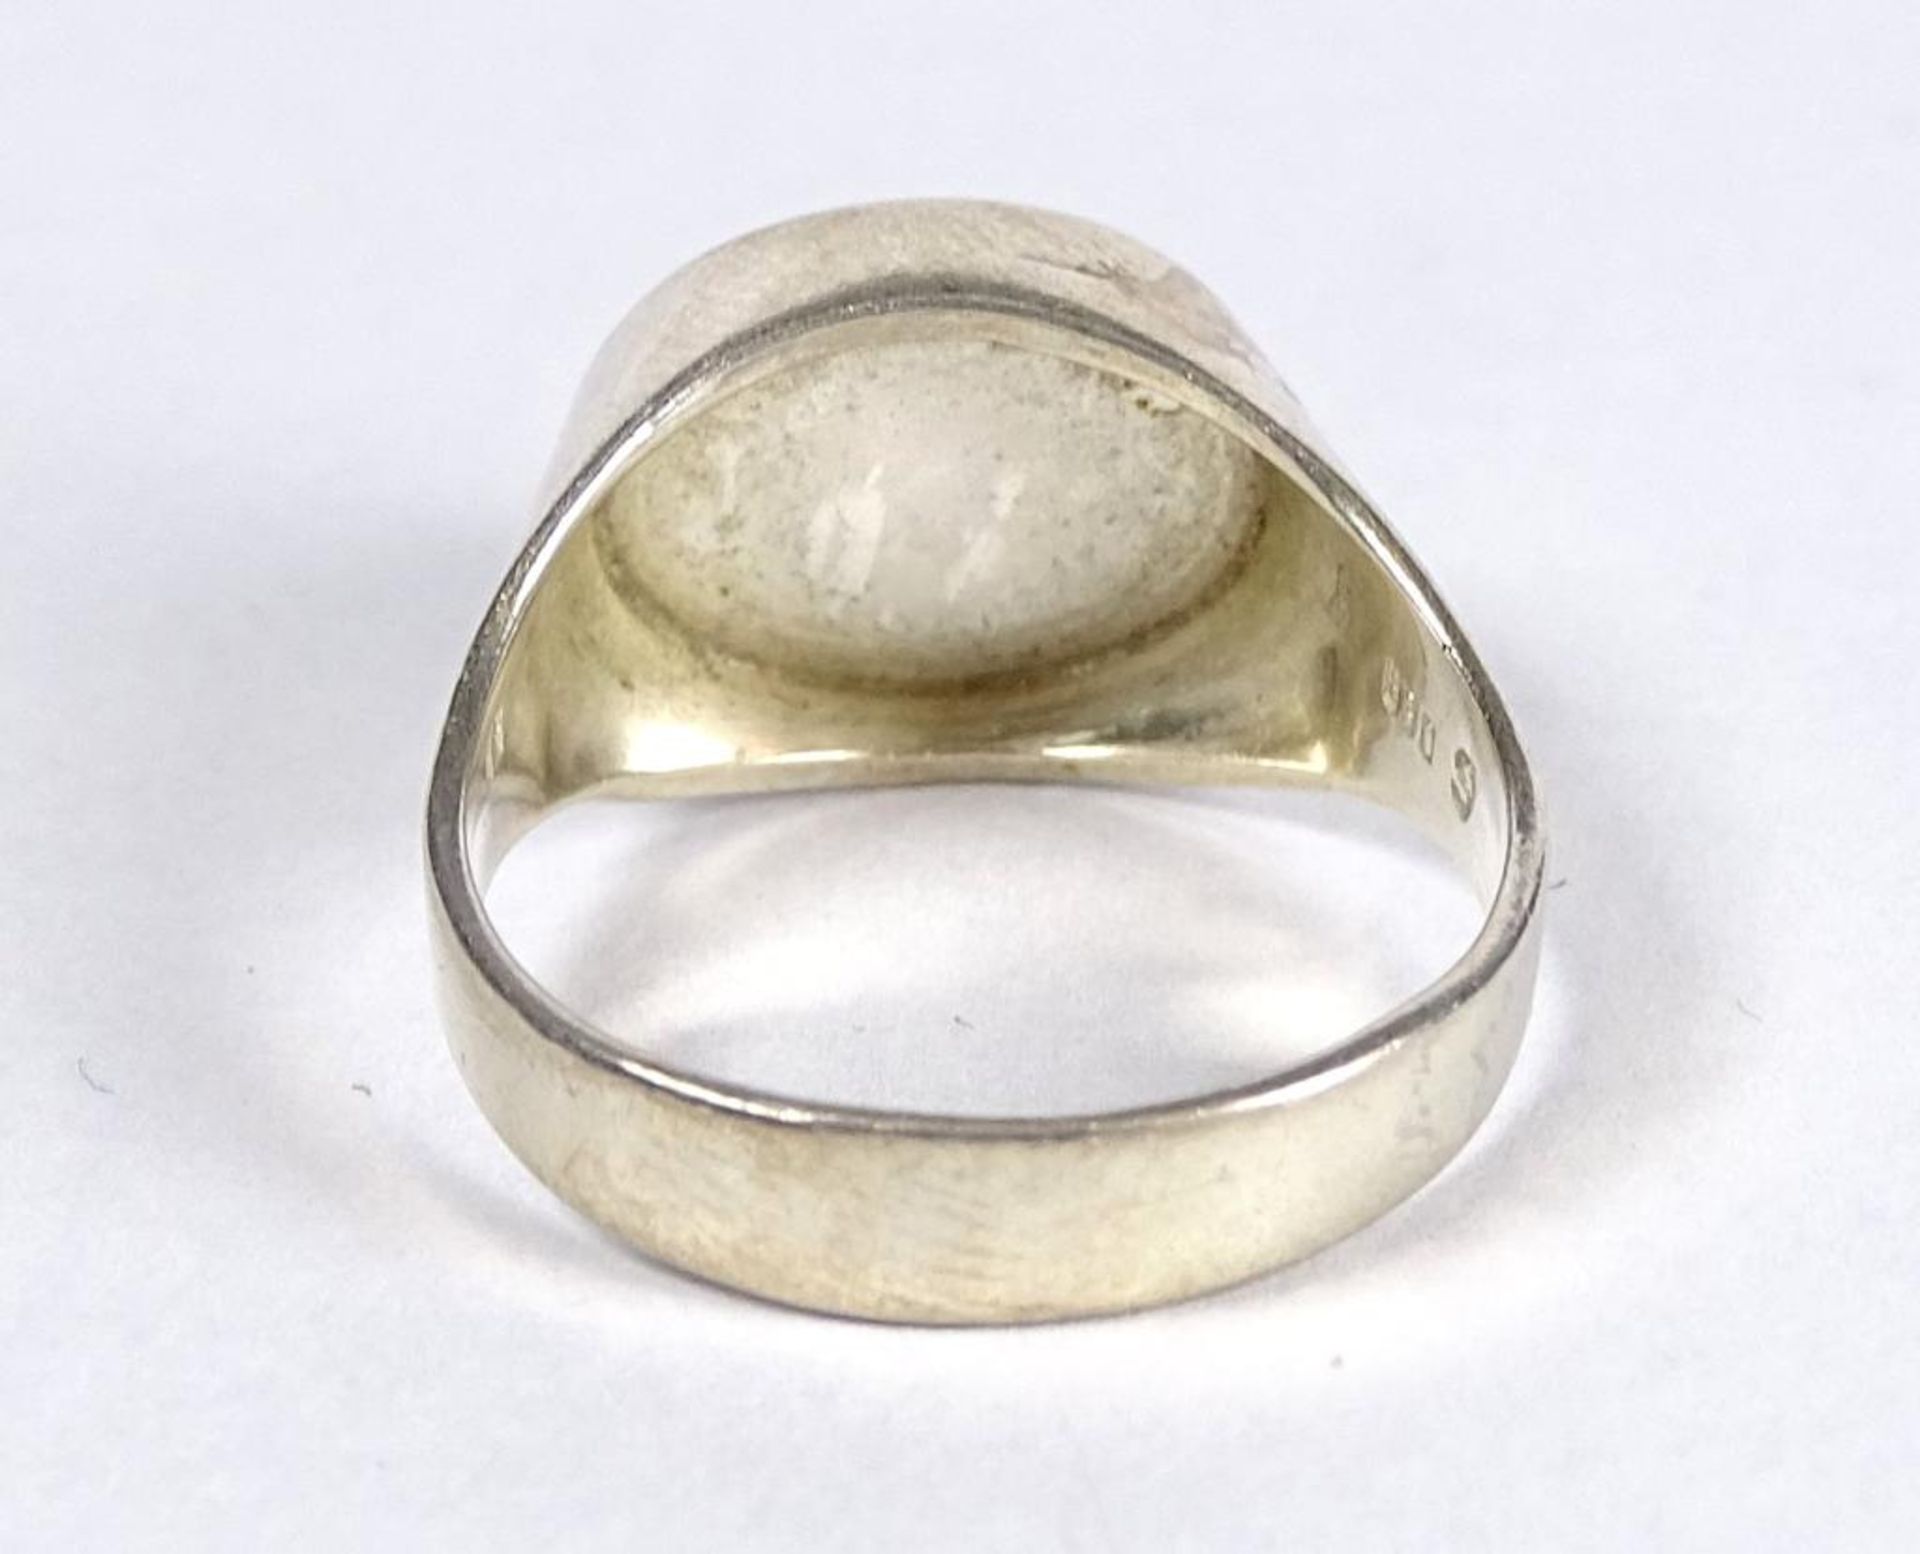 Bernstein Ring, Silber -830-, 3,9gr.RG 54 - Bild 3 aus 3